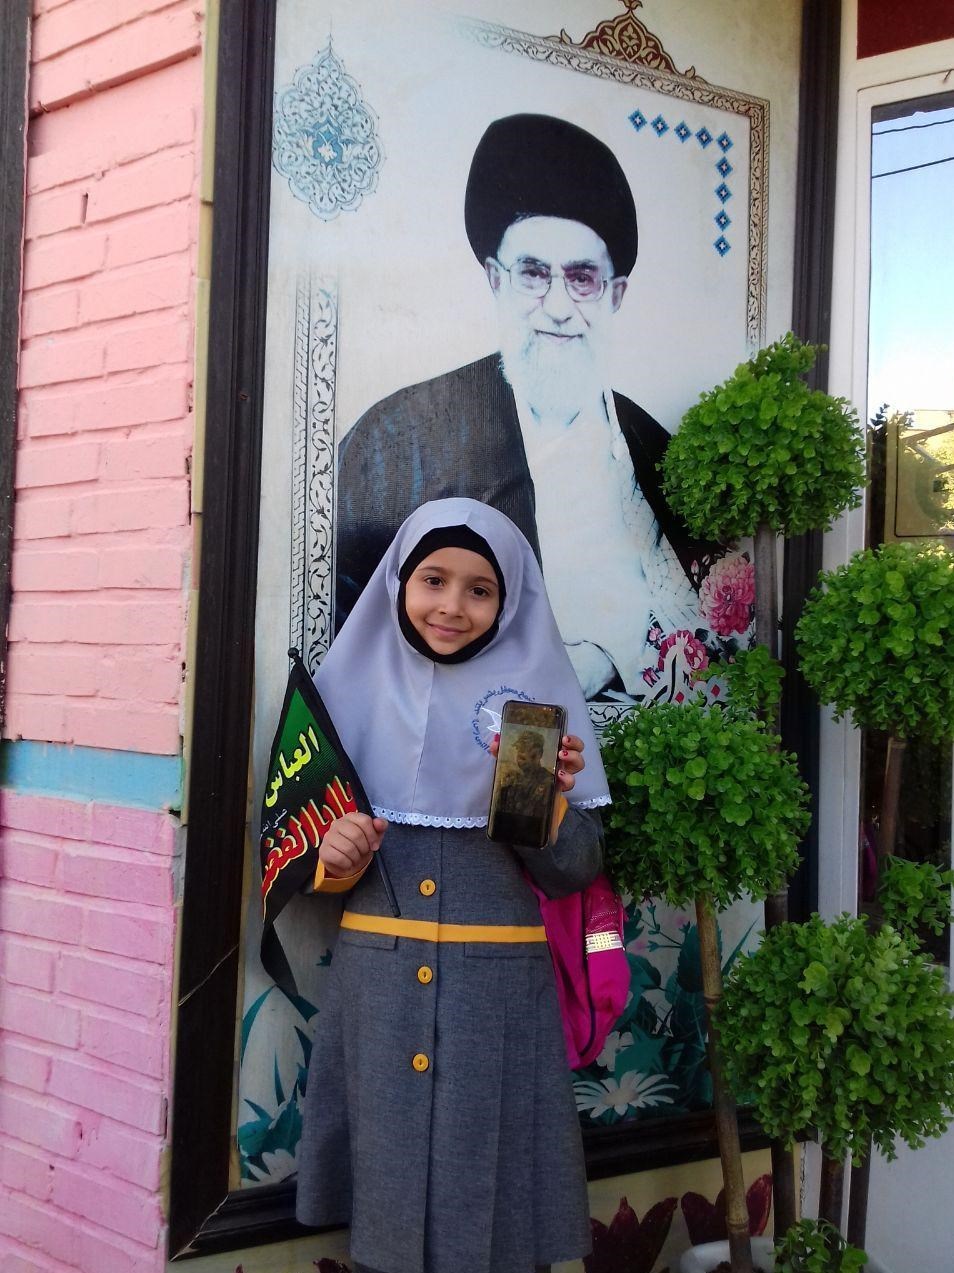 جای خالی شهید در اولین روز مدرسه دخترش + عکس